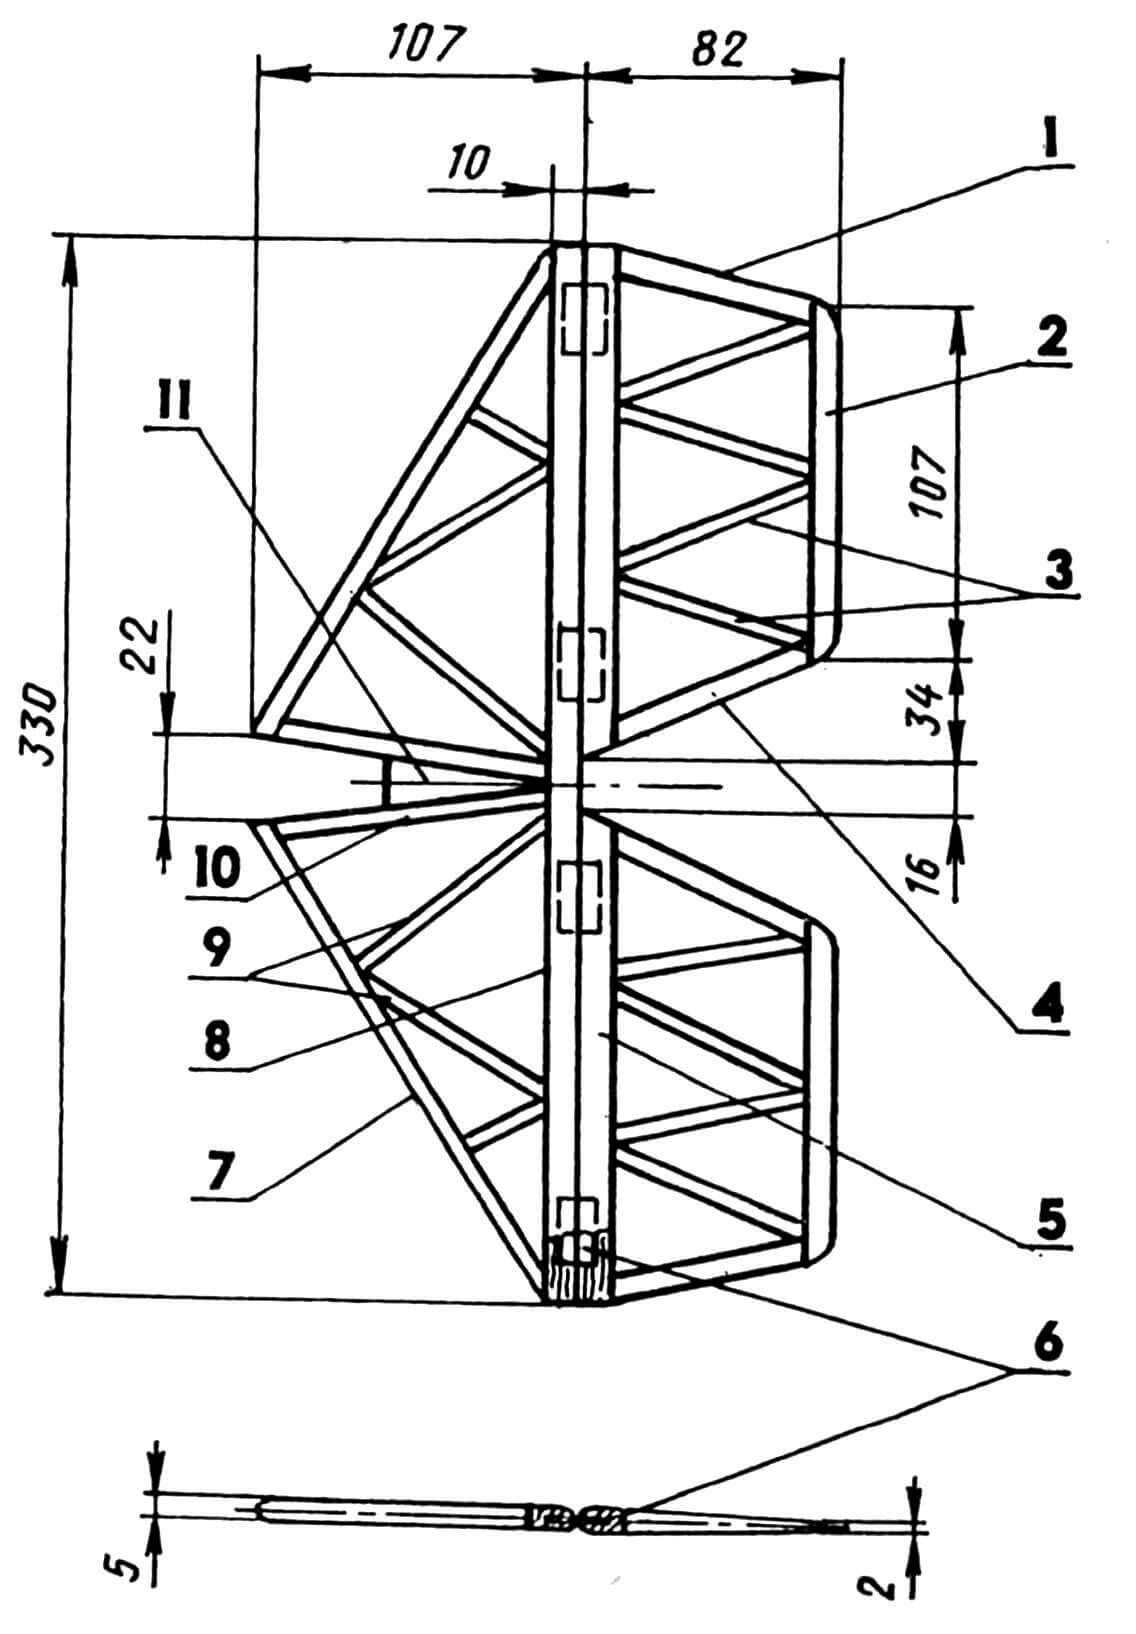 Горизонтальное оперение: 1,4 — законцовки руля высоты (сосна, рейка 10x3); 2 — кромка руля высоты, задняя (сосна, рейка 10x3); 3 — нервюры руля высоты (сосна, рейка 5x3); 5 — кромка руля высоты, передняя (сосна, рейка 10x5); 6 — петля (капроновая лента); 7 — кромка стабилизатора, передняя (сосна, рейка 10x3); 8 — кромка стабилизатора, задняя (сосна, рейка 10x3); 9 — нервюры стабилизатора (сосна, рейка 5x3); 10 — нервюра стабилизатора, корневая (сосна, рейка 10x3); 11 — вставка (липа).